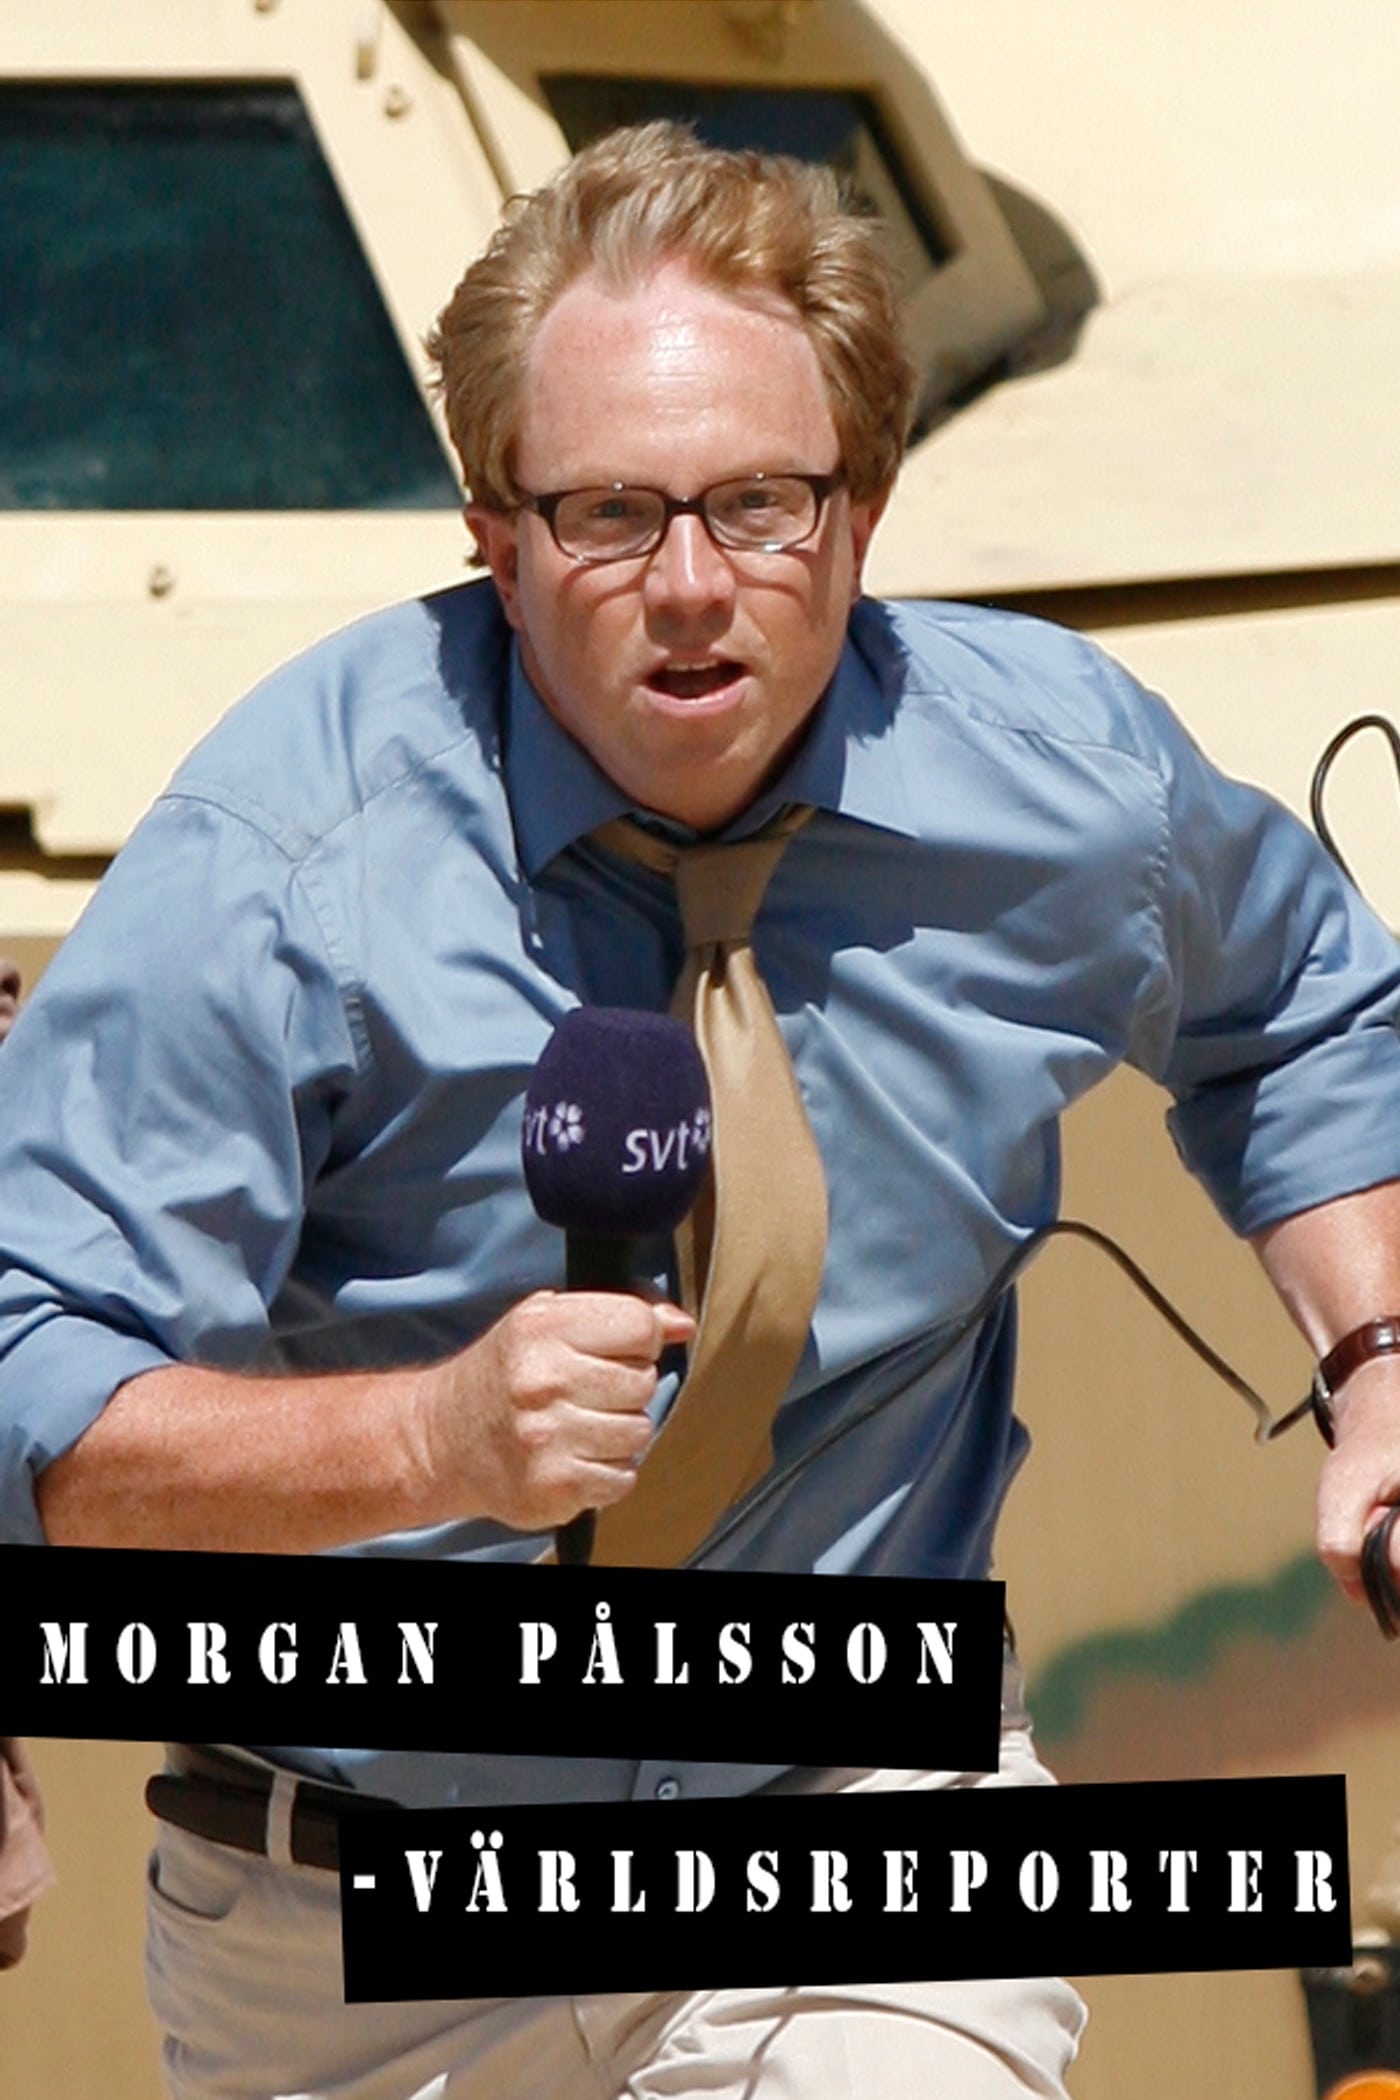 Morgan Pålsson - Världsreporter (2008)